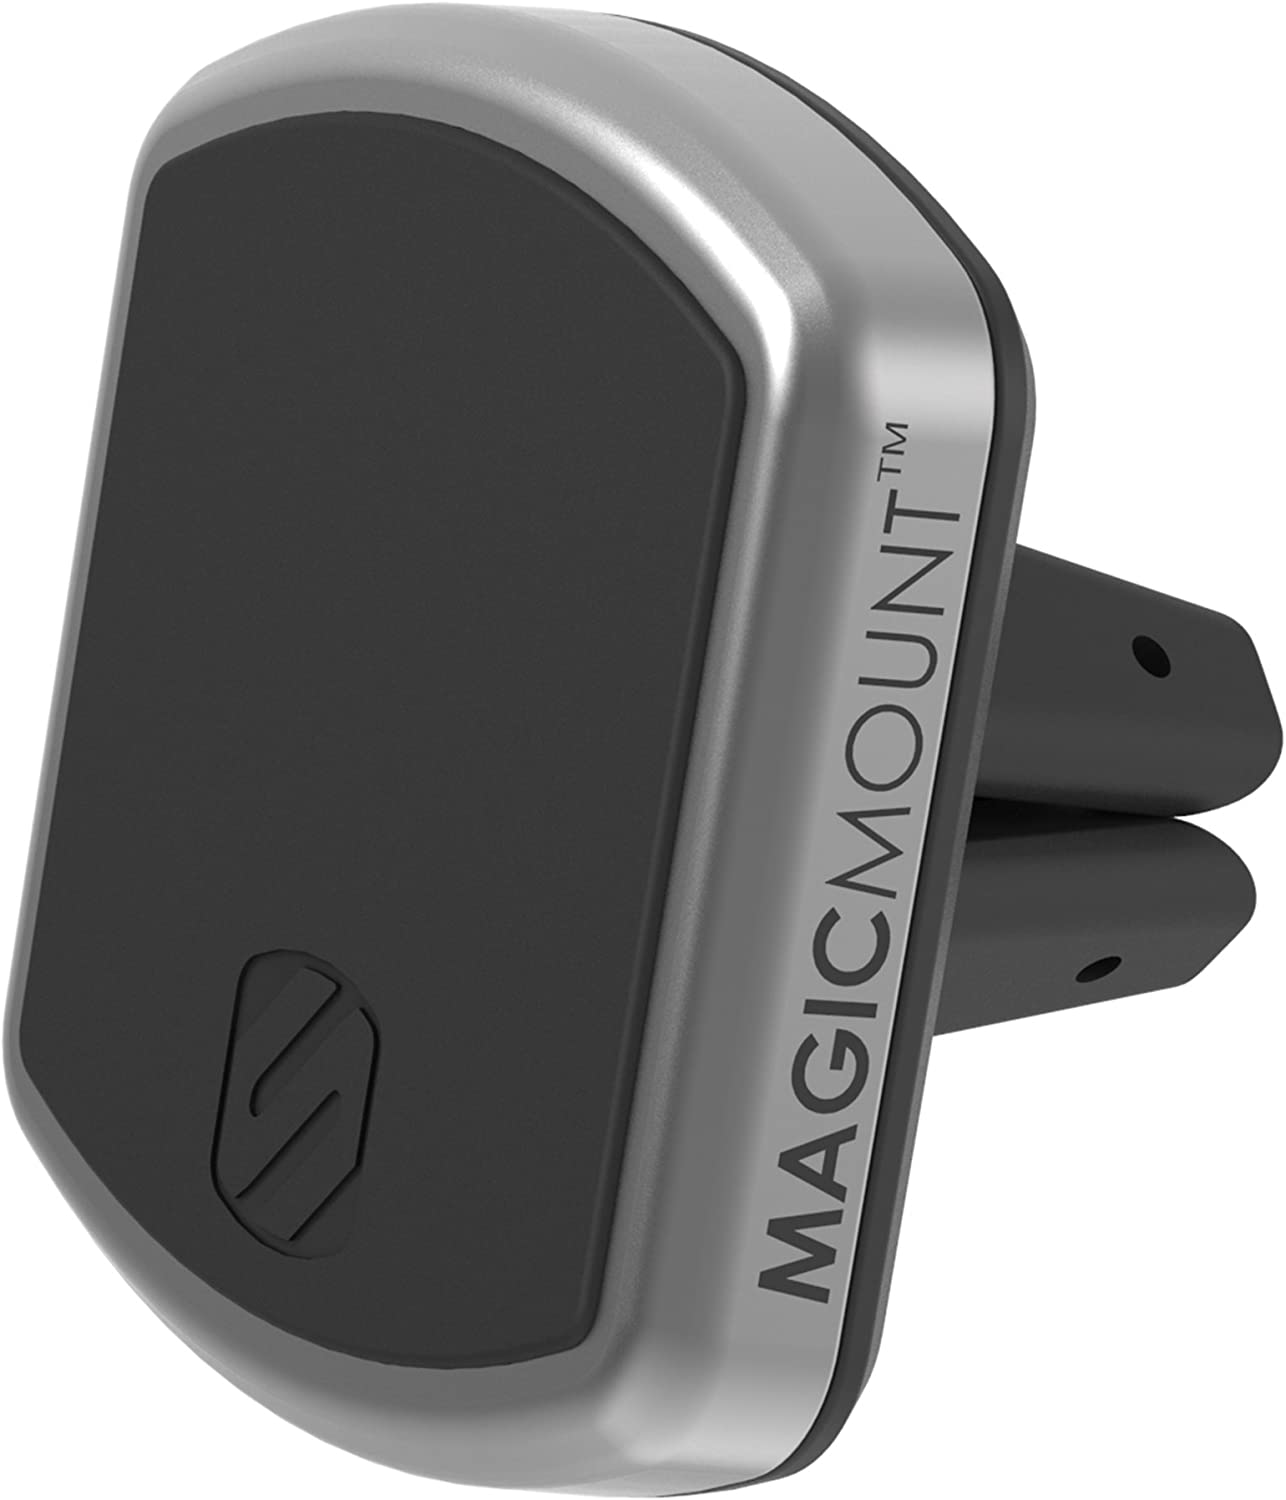 Scosche MagicMount Pro - Soporte magnético para teléfono de automóvil, universal con todos los dispositivos, soporte de ventilación de aire